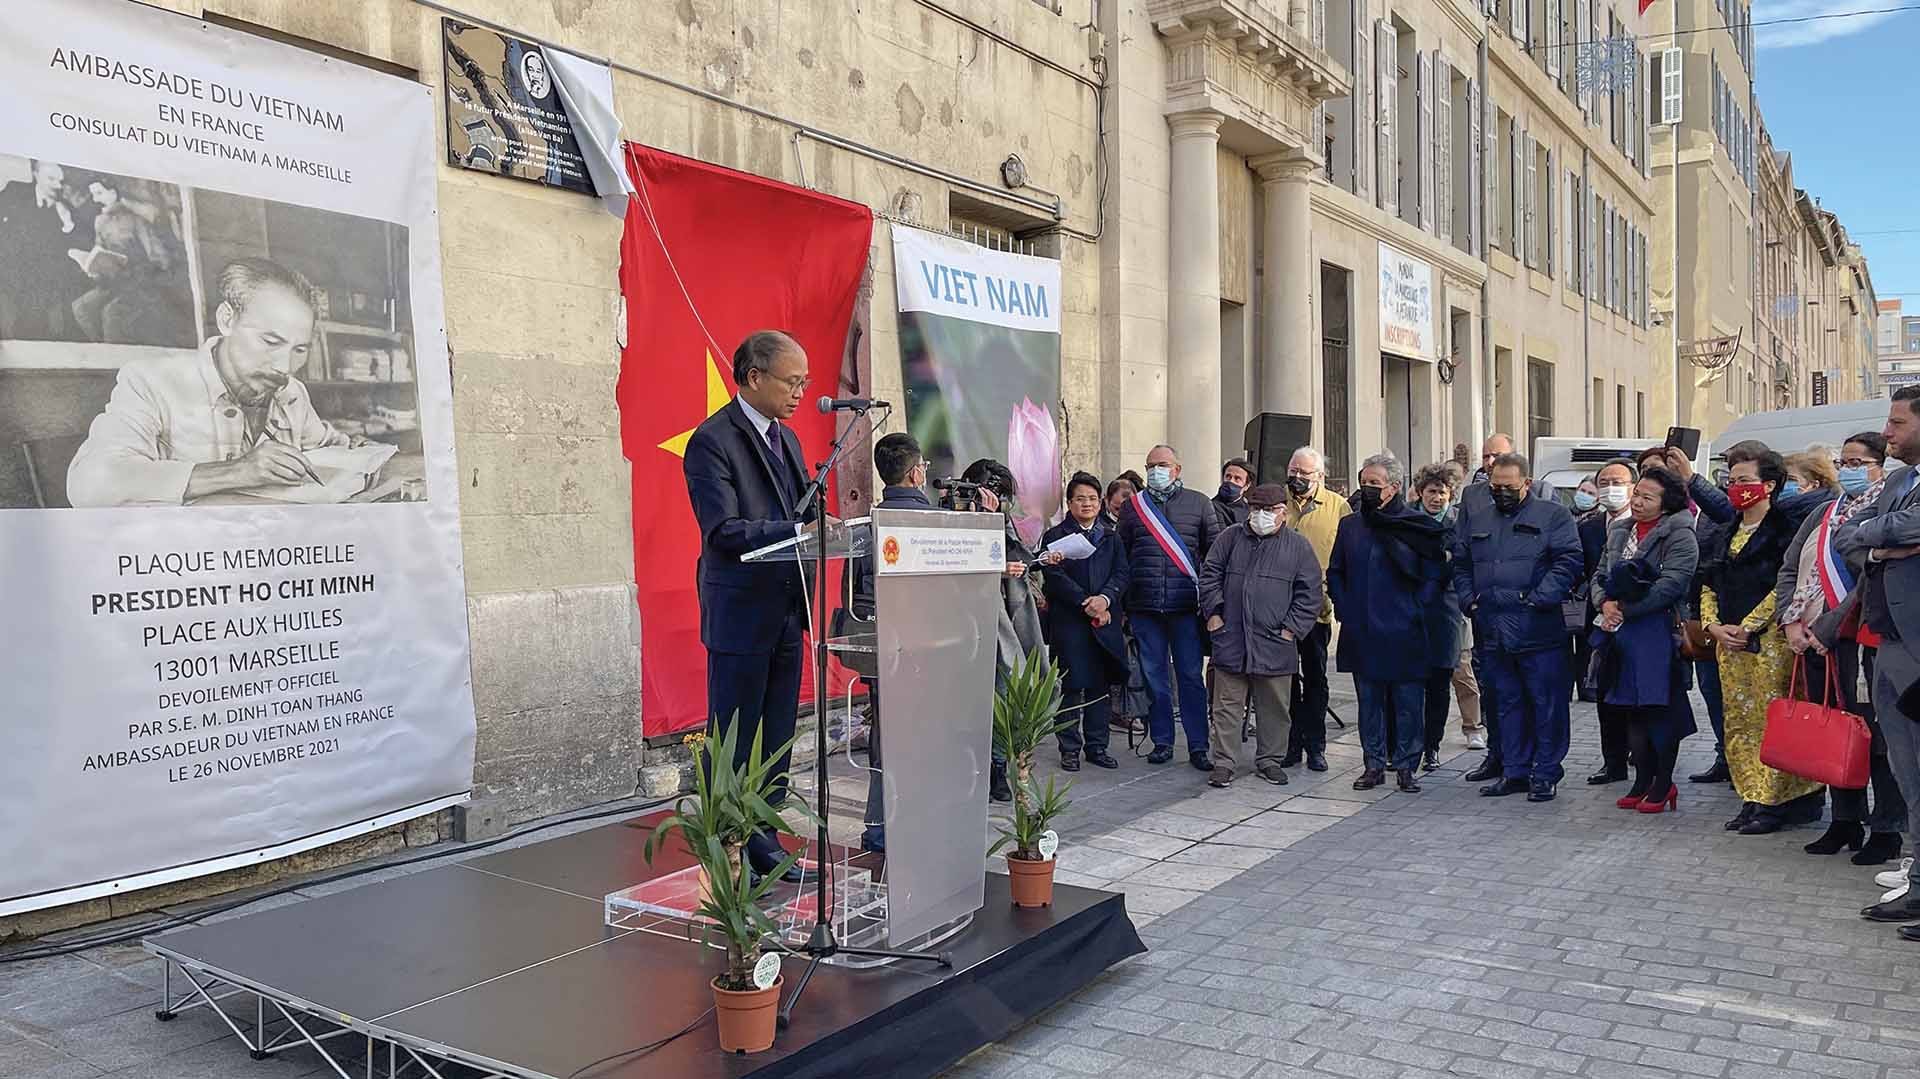 Đại sứ Việt Nam tại Pháp Đinh Toàn Thắng phát biểu tại buổi lễ khánh thành biển tưởng niệm Chủ tịch Hồ Chí Minh tại thành phố Marseille, tháng 11/2021. (Nguồn: TTXVN)